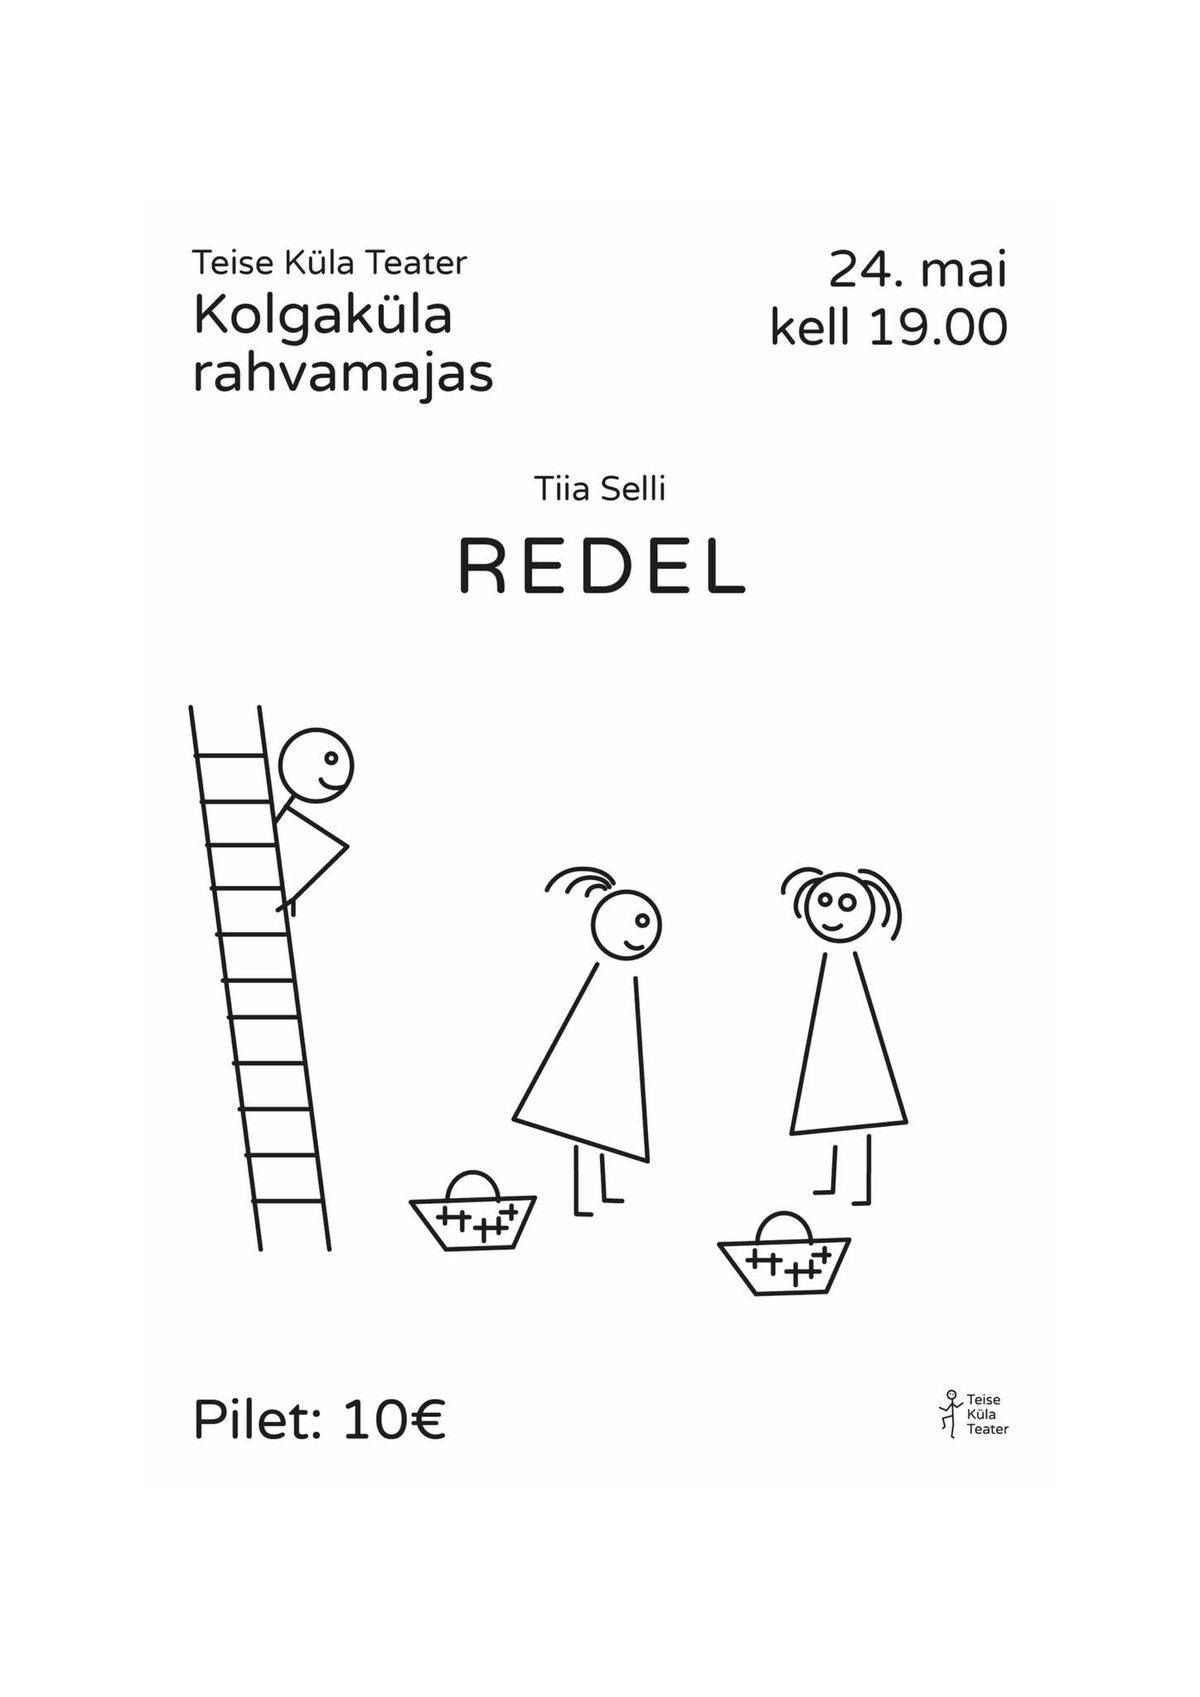 Teise K\u00fcla Teatri etendus "Redel"